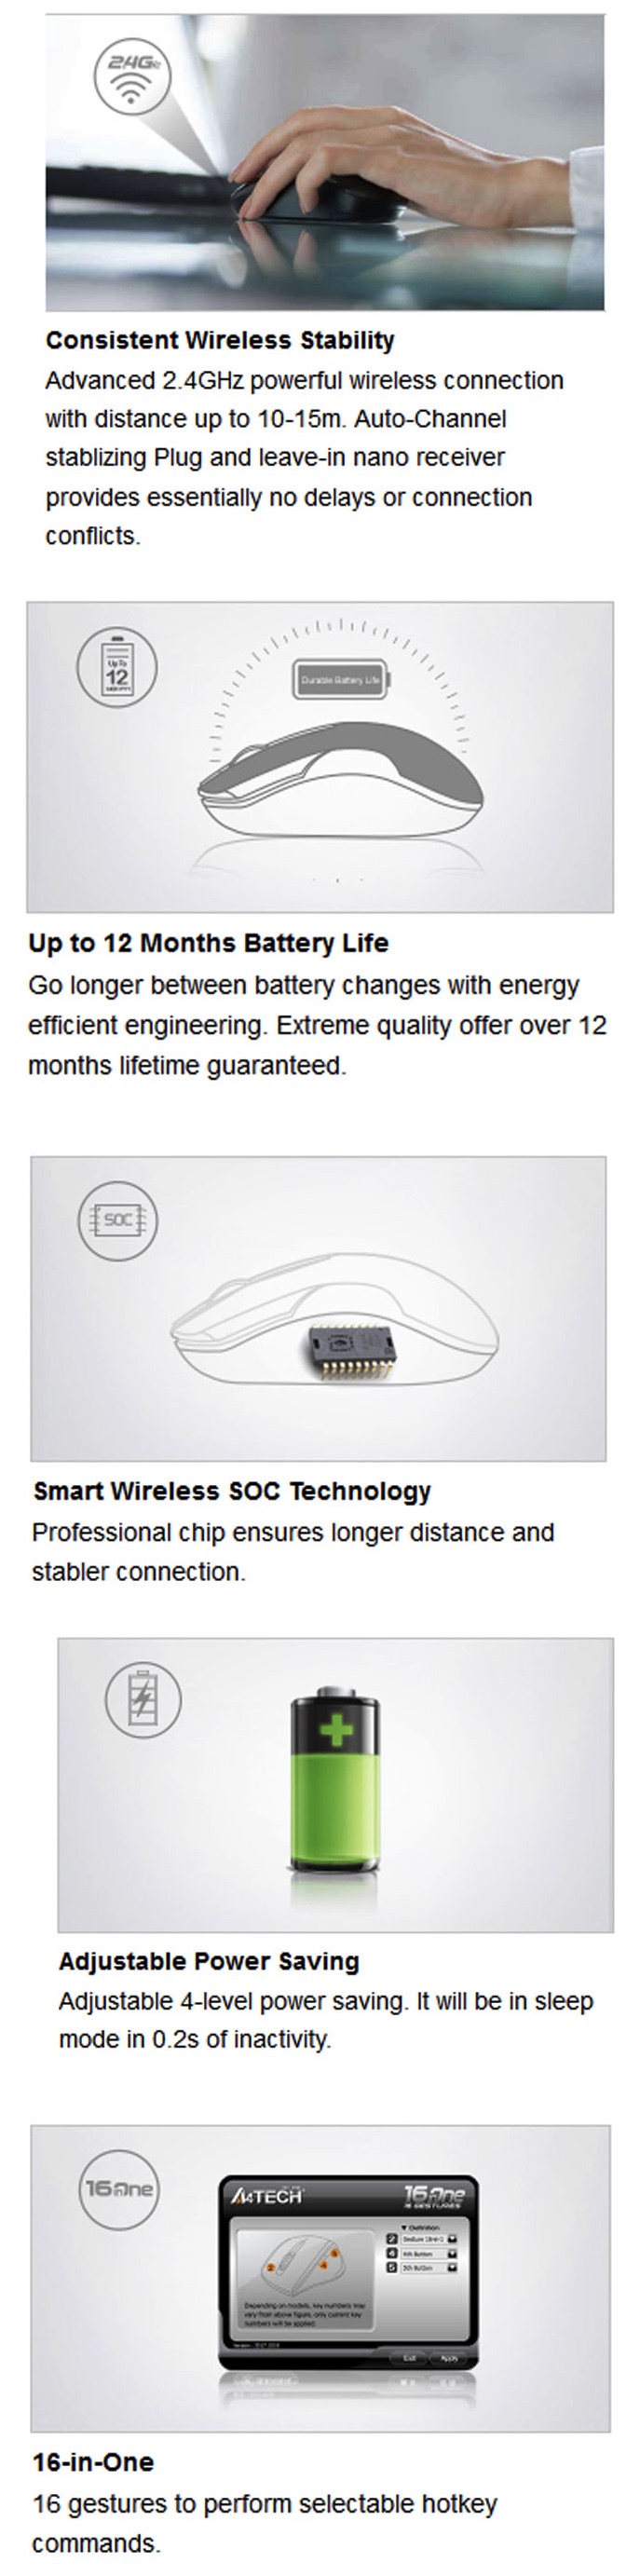 A4Tech-Wireless-Mouse-G3-300N-Description